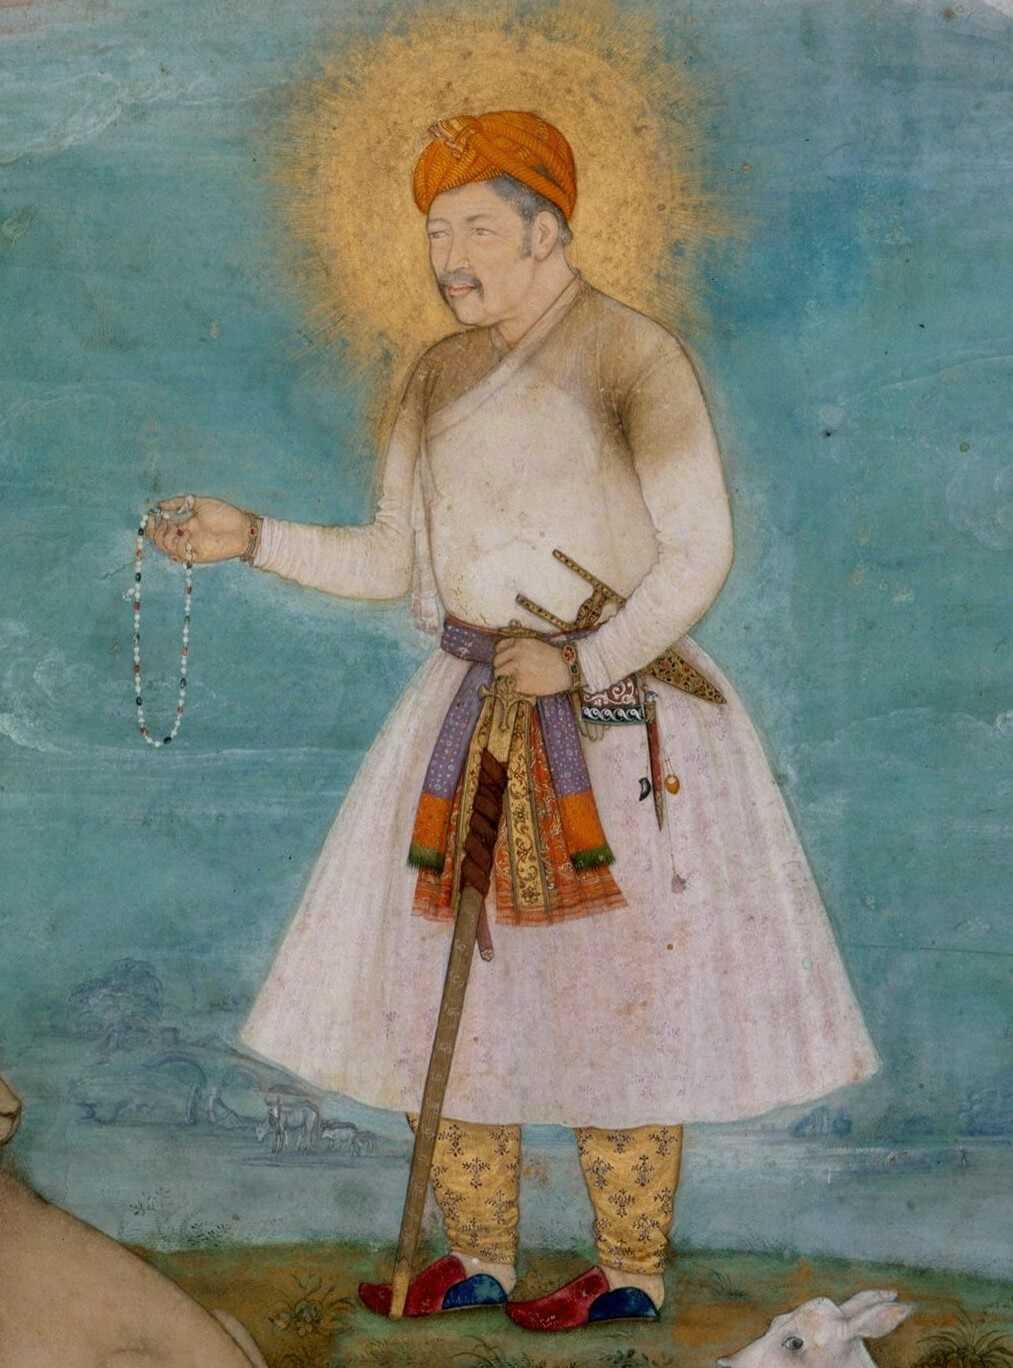 Akbar I